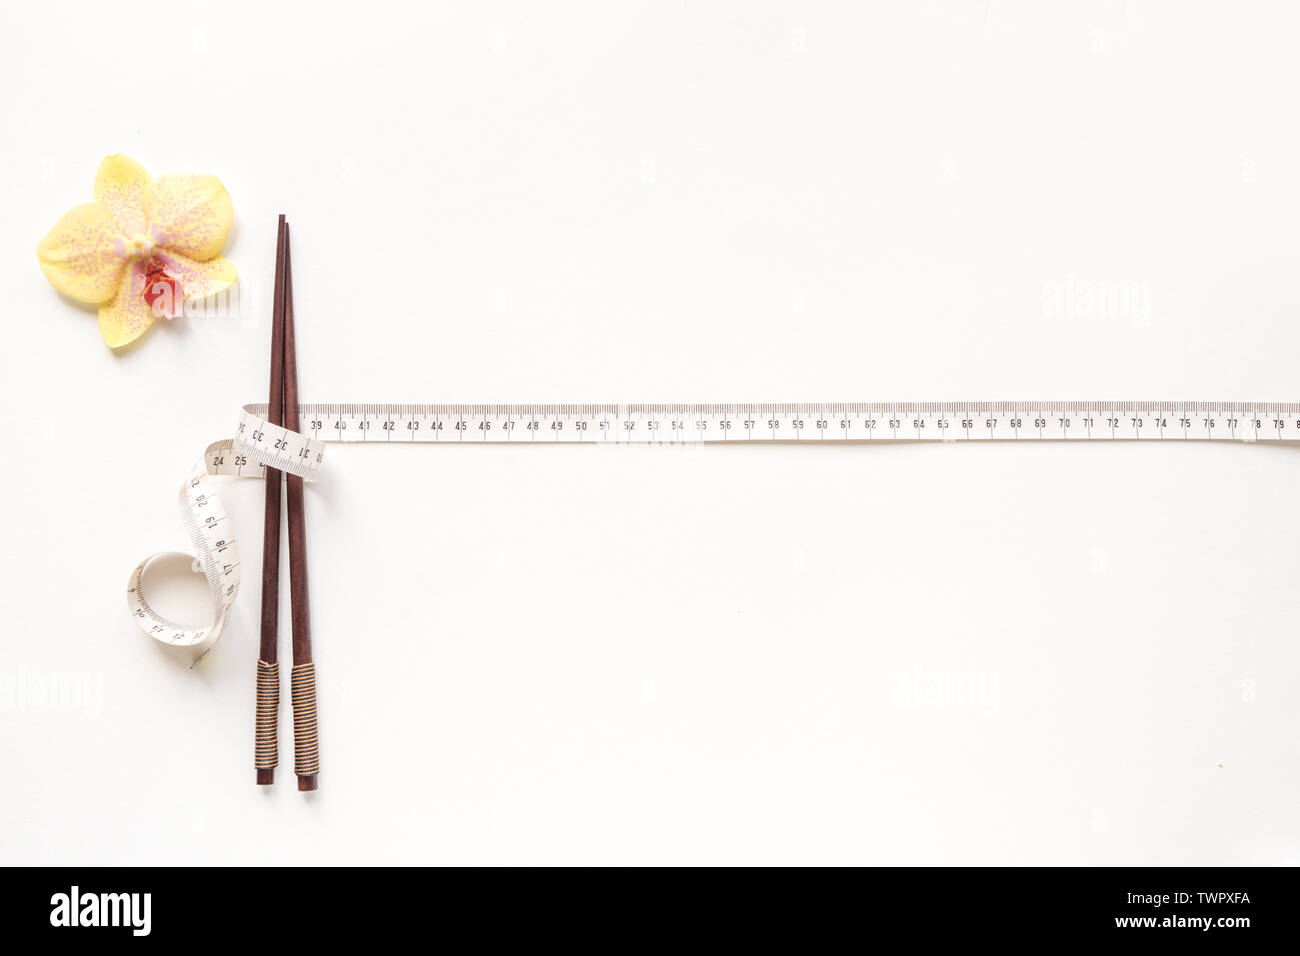 Asiatischen Ernährung Konzept. Stäbchen und Maßband auf weißem Hintergrund, kopieren. Diät, asiatische gesunder Lebensstil, Gewichtsverlust Konzept. Stockfoto